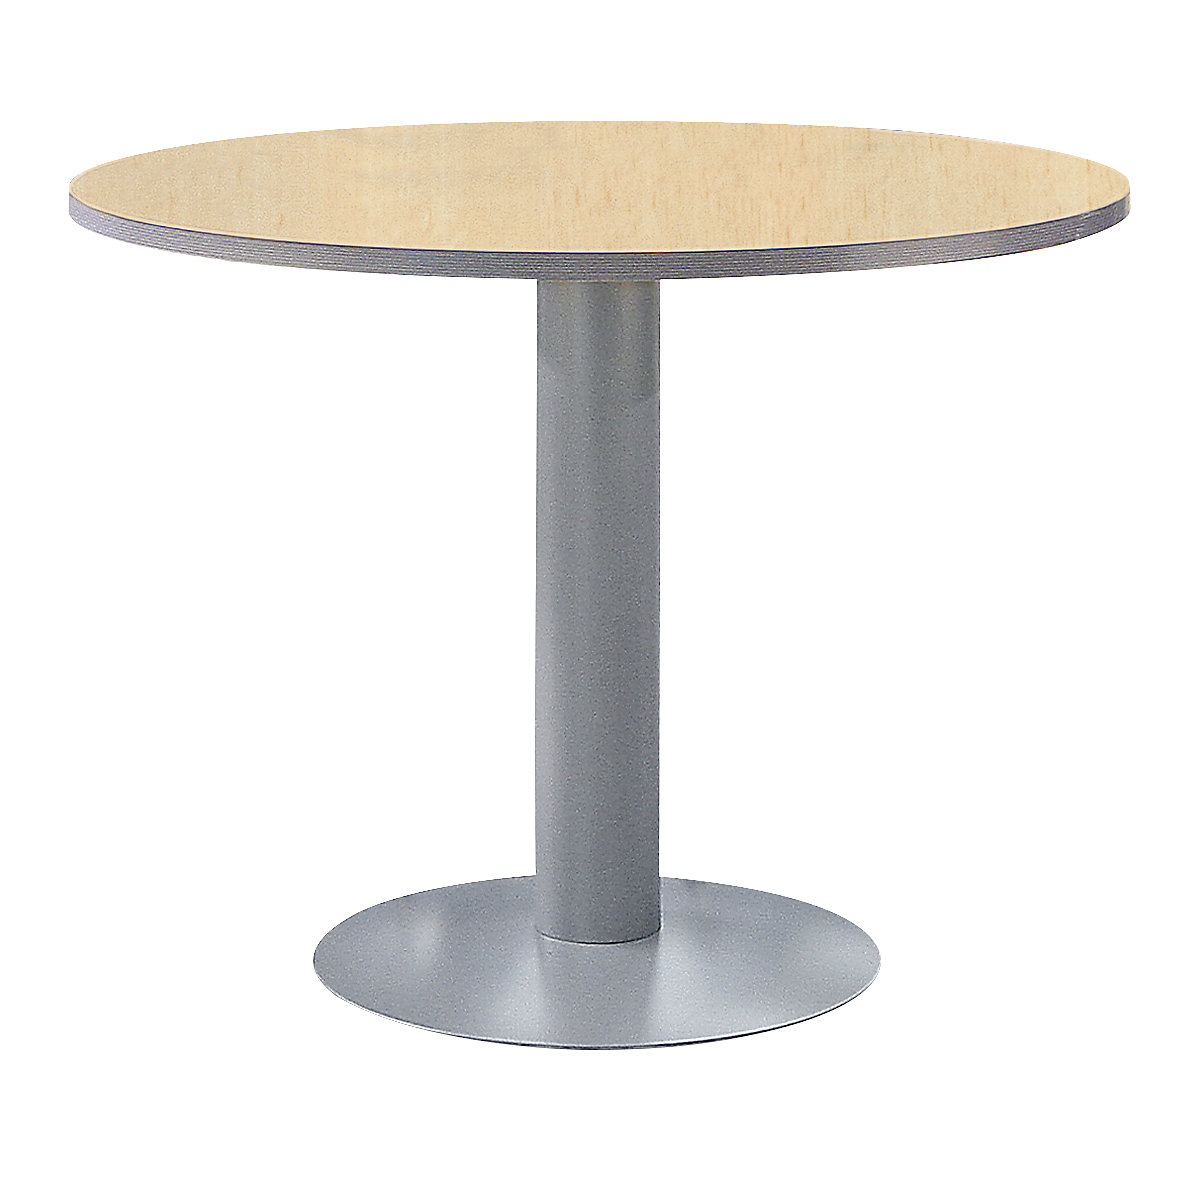 Pedestal table, Ø 1000 mm, height 720 mm, beech finish / aluminium colour-4